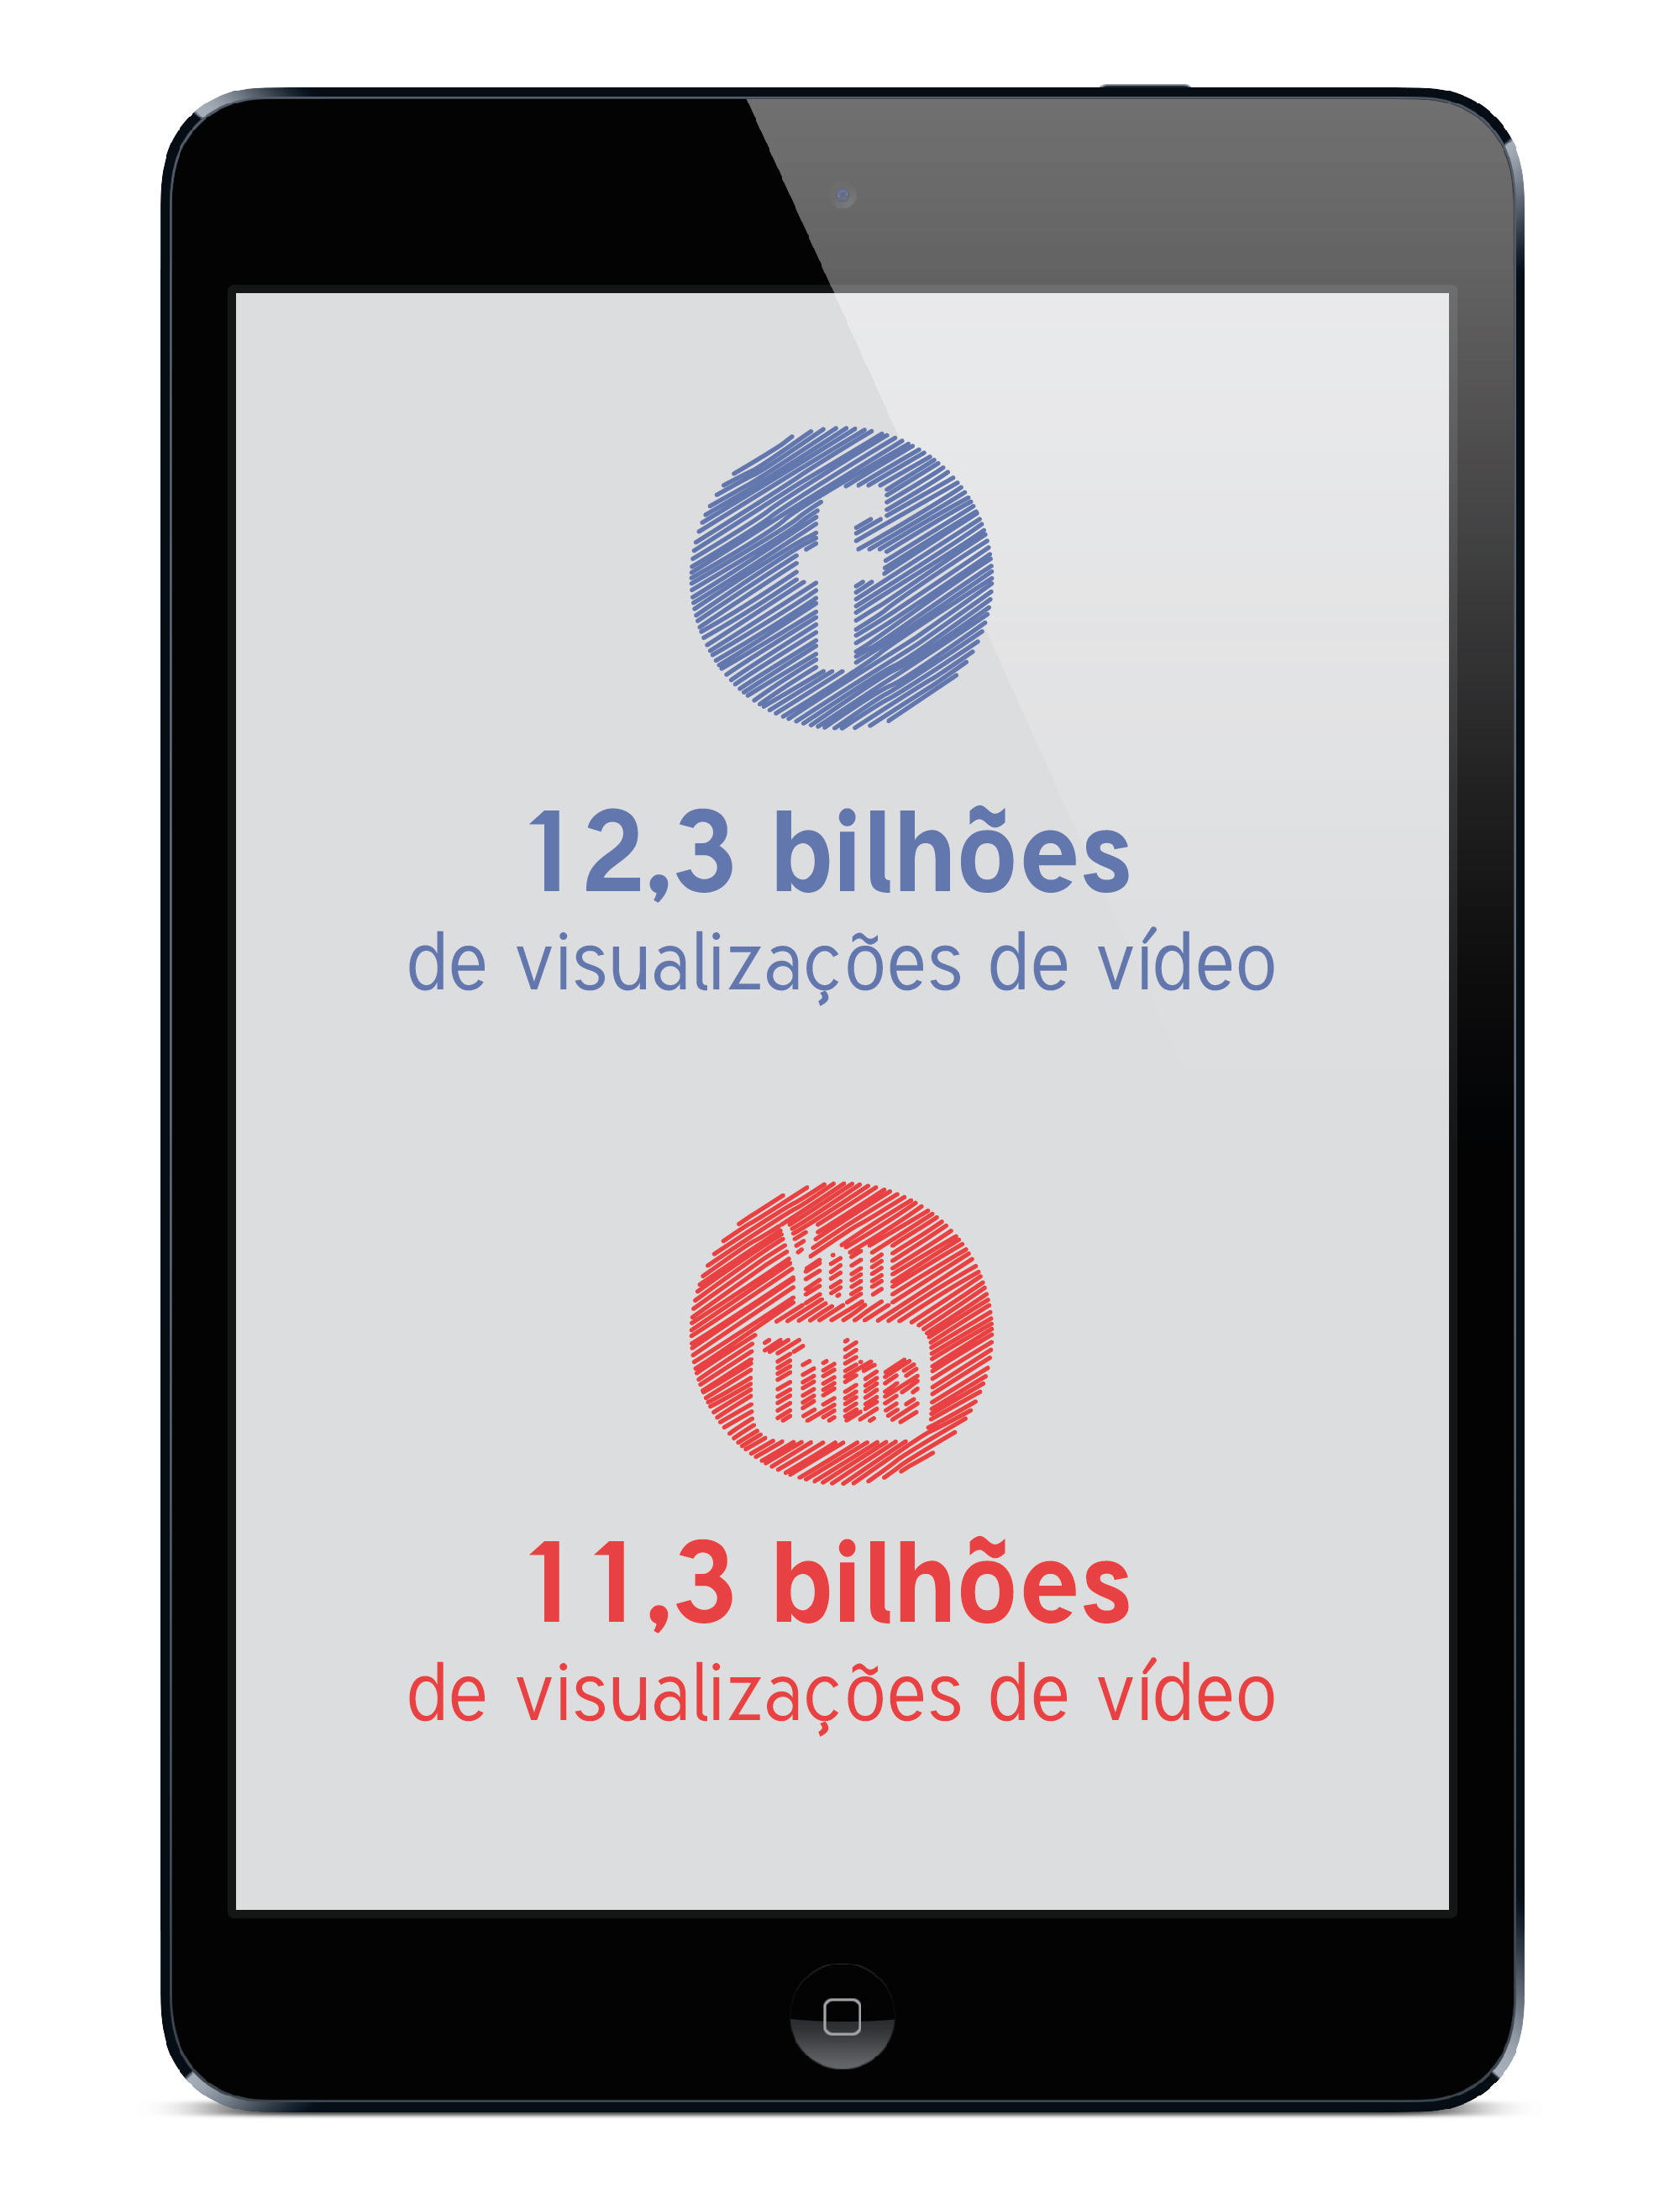 Facebook supera a visualização de vídeos em relação ao Youtube